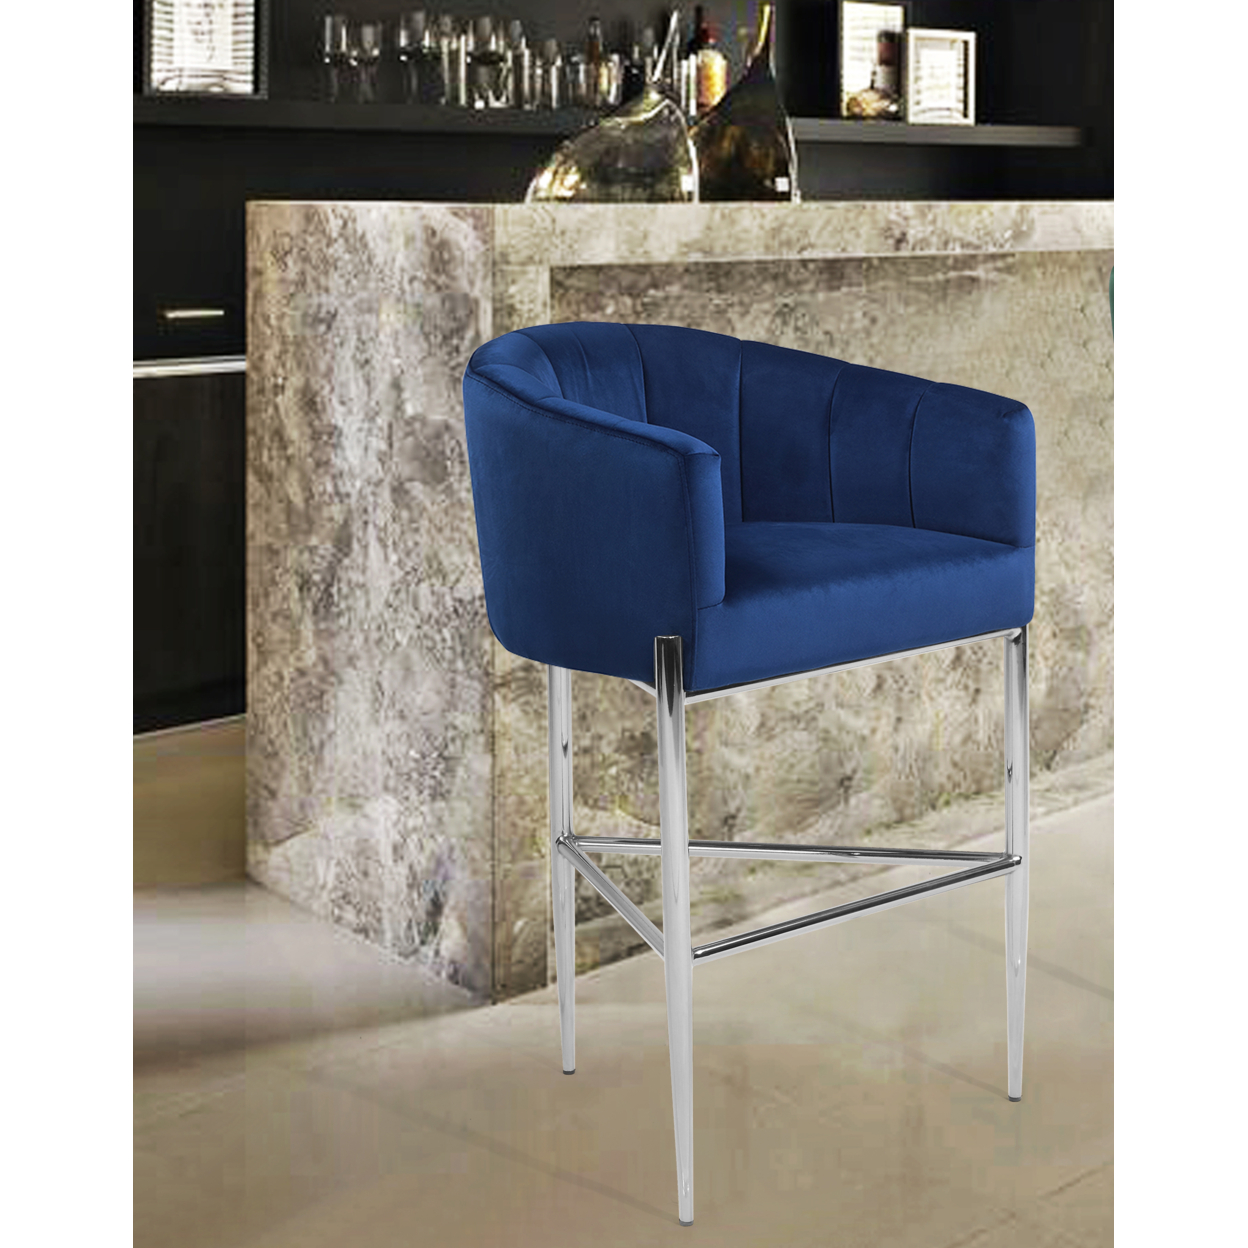 Iconic Home Ardee Bar Stool Chair Velvet Upholstered Shelter Arm Shell Design 3 Legged Chrome Tone Solid Metal Base - Navy